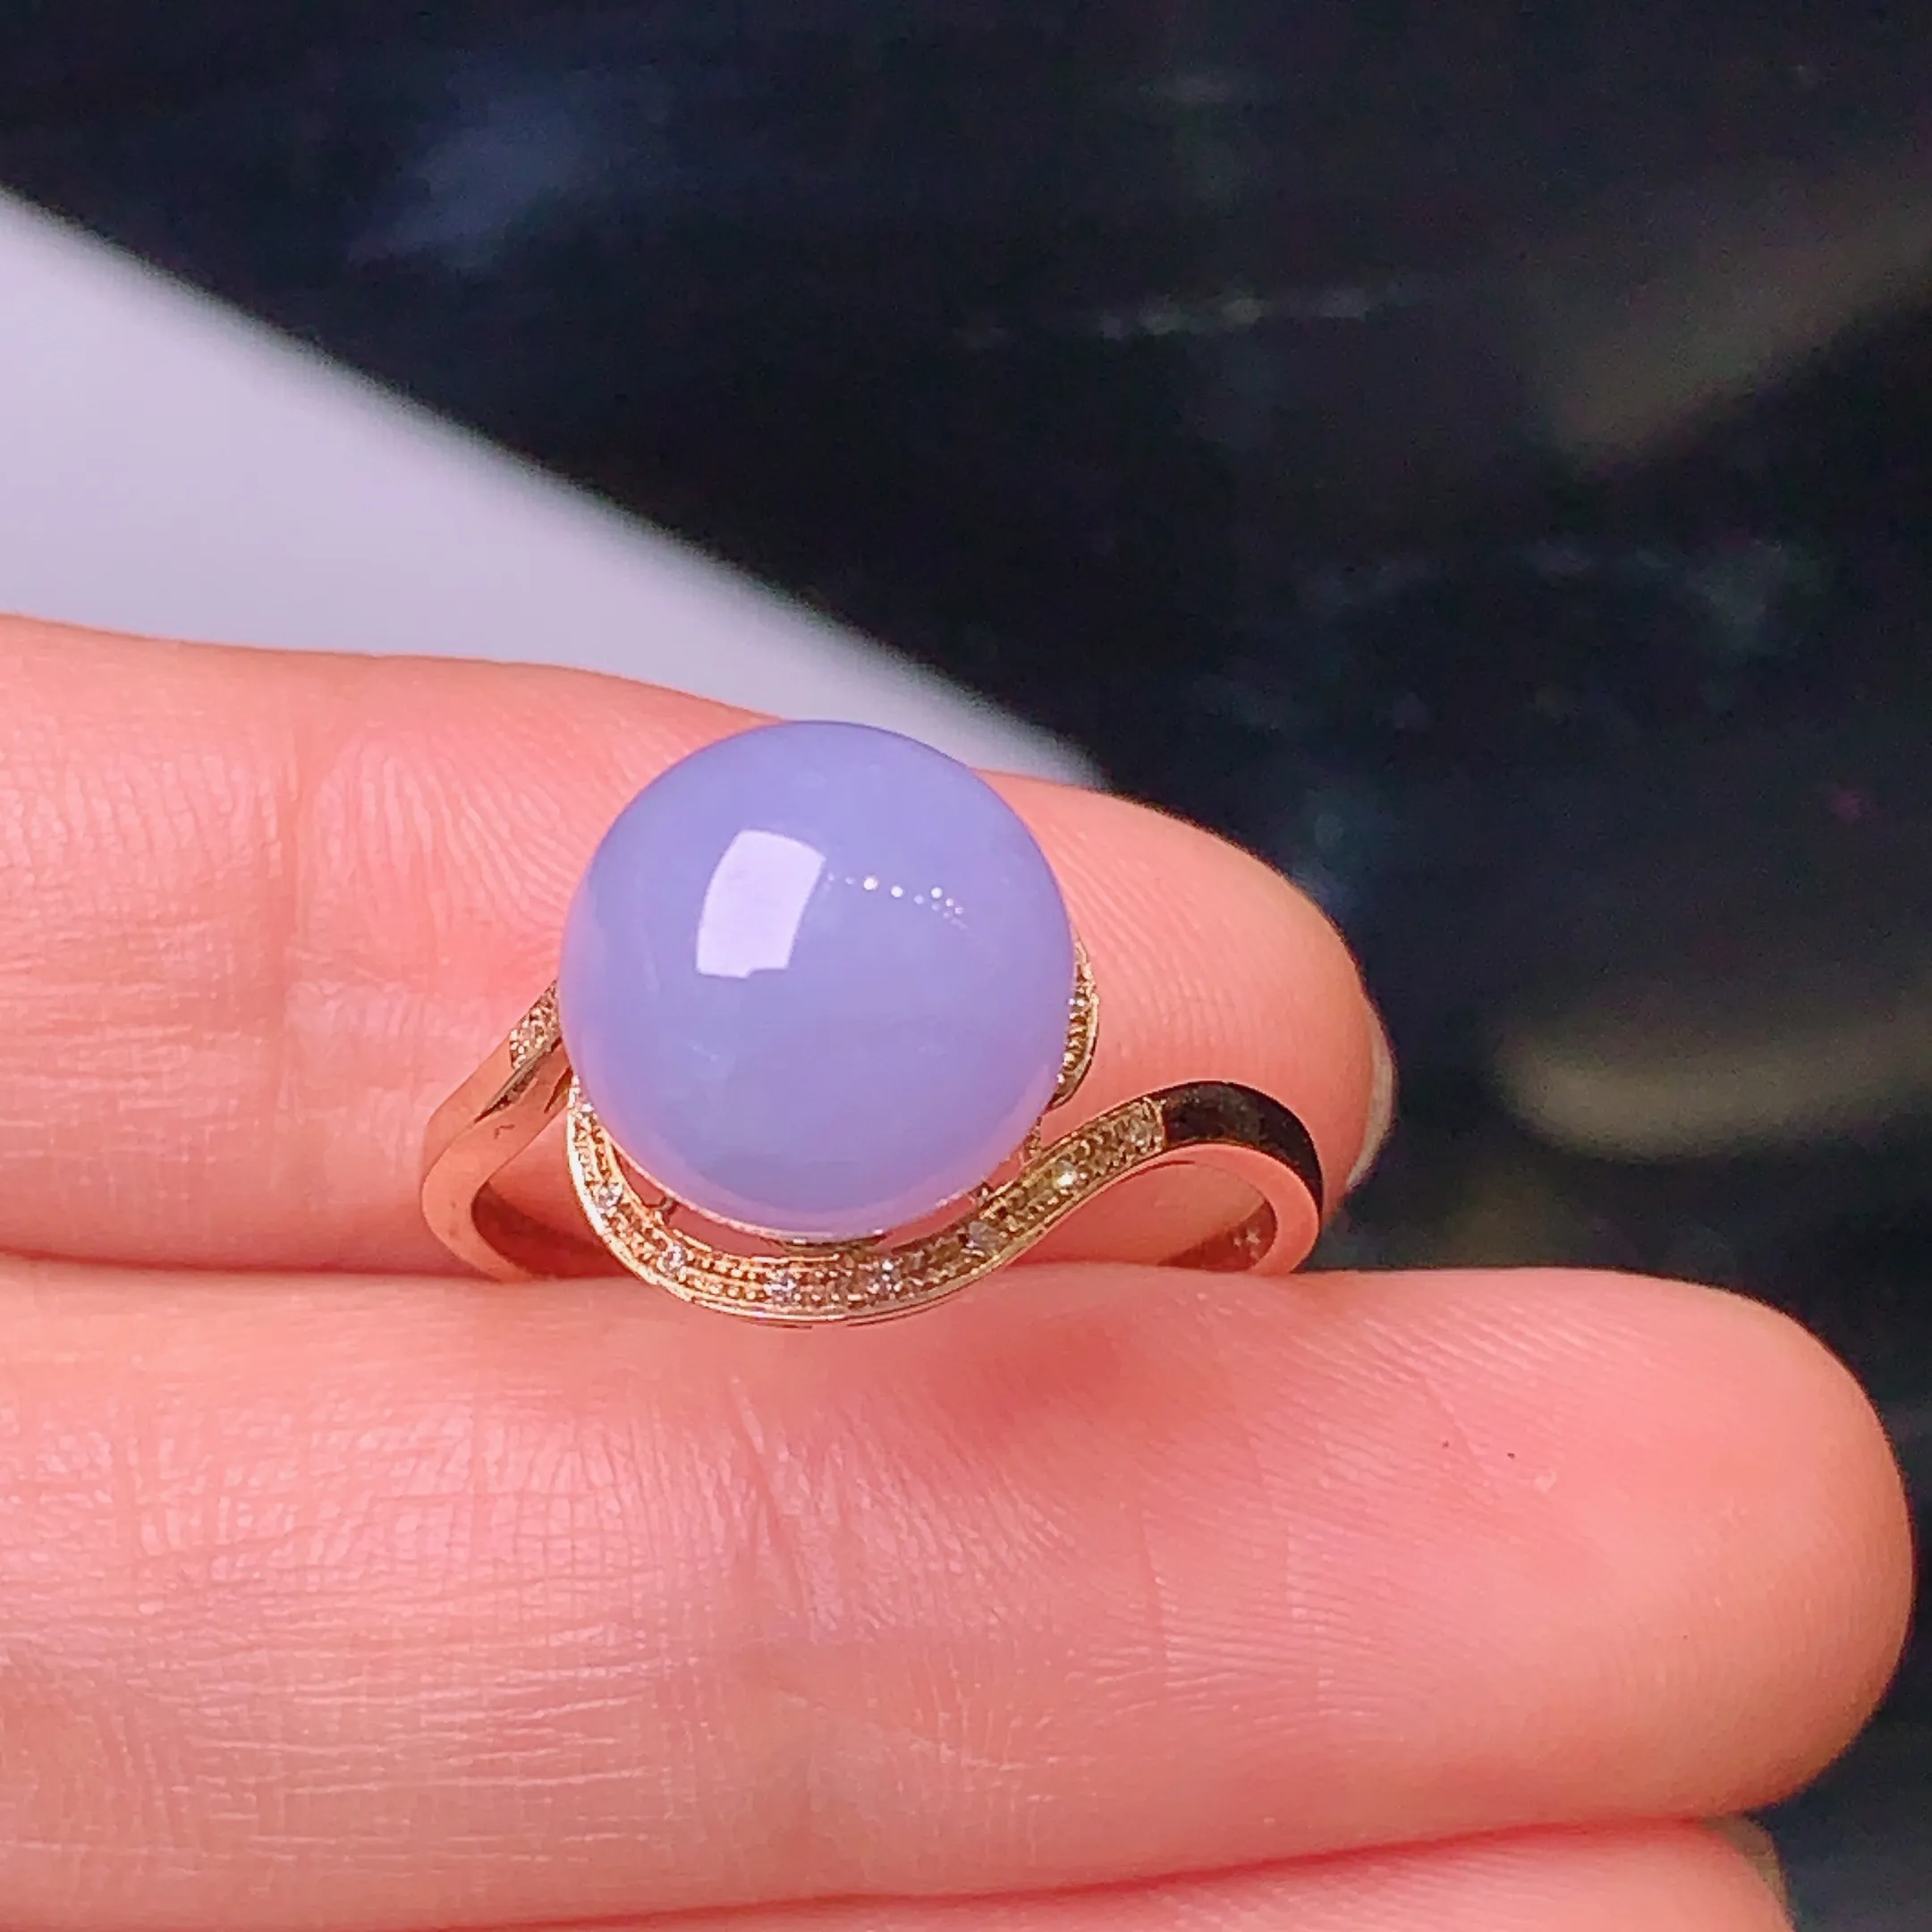 18k金钻镶嵌紫罗兰圆珠戒指 玉质细腻 色泽艳丽饱满 款式新颖精美 圈口14 整体尺寸9.9